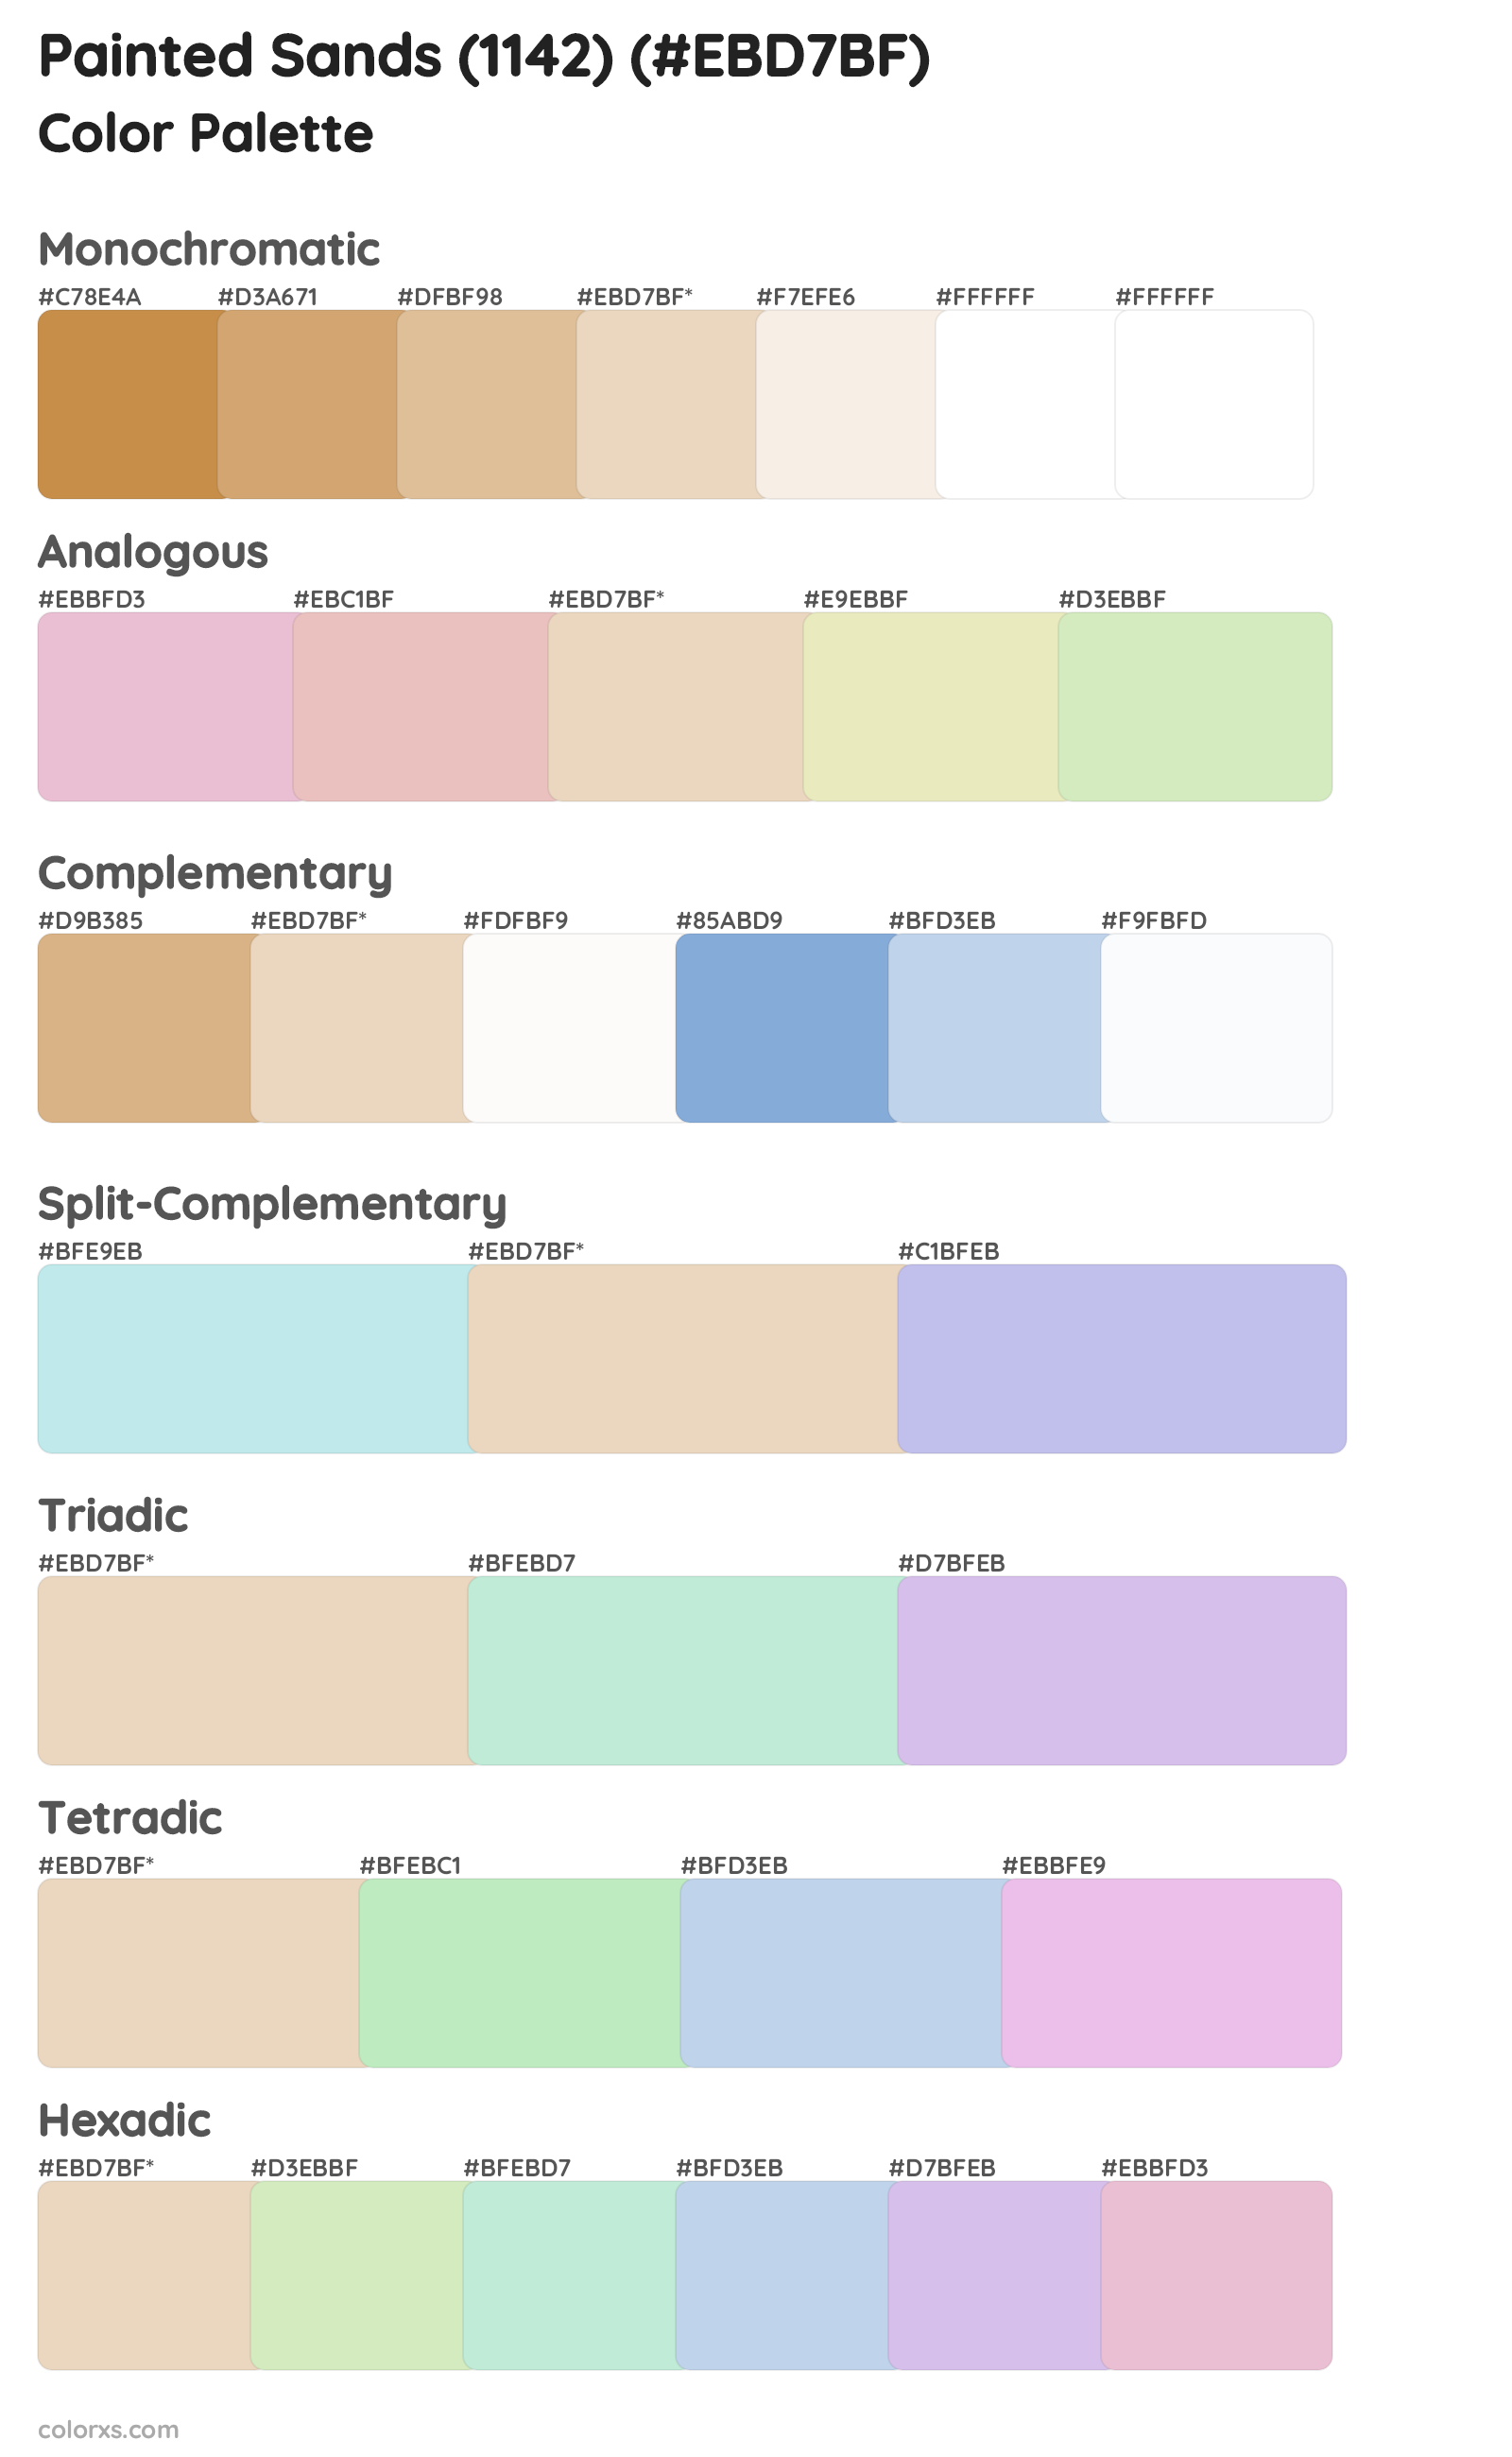 Painted Sands (1142) Color Scheme Palettes